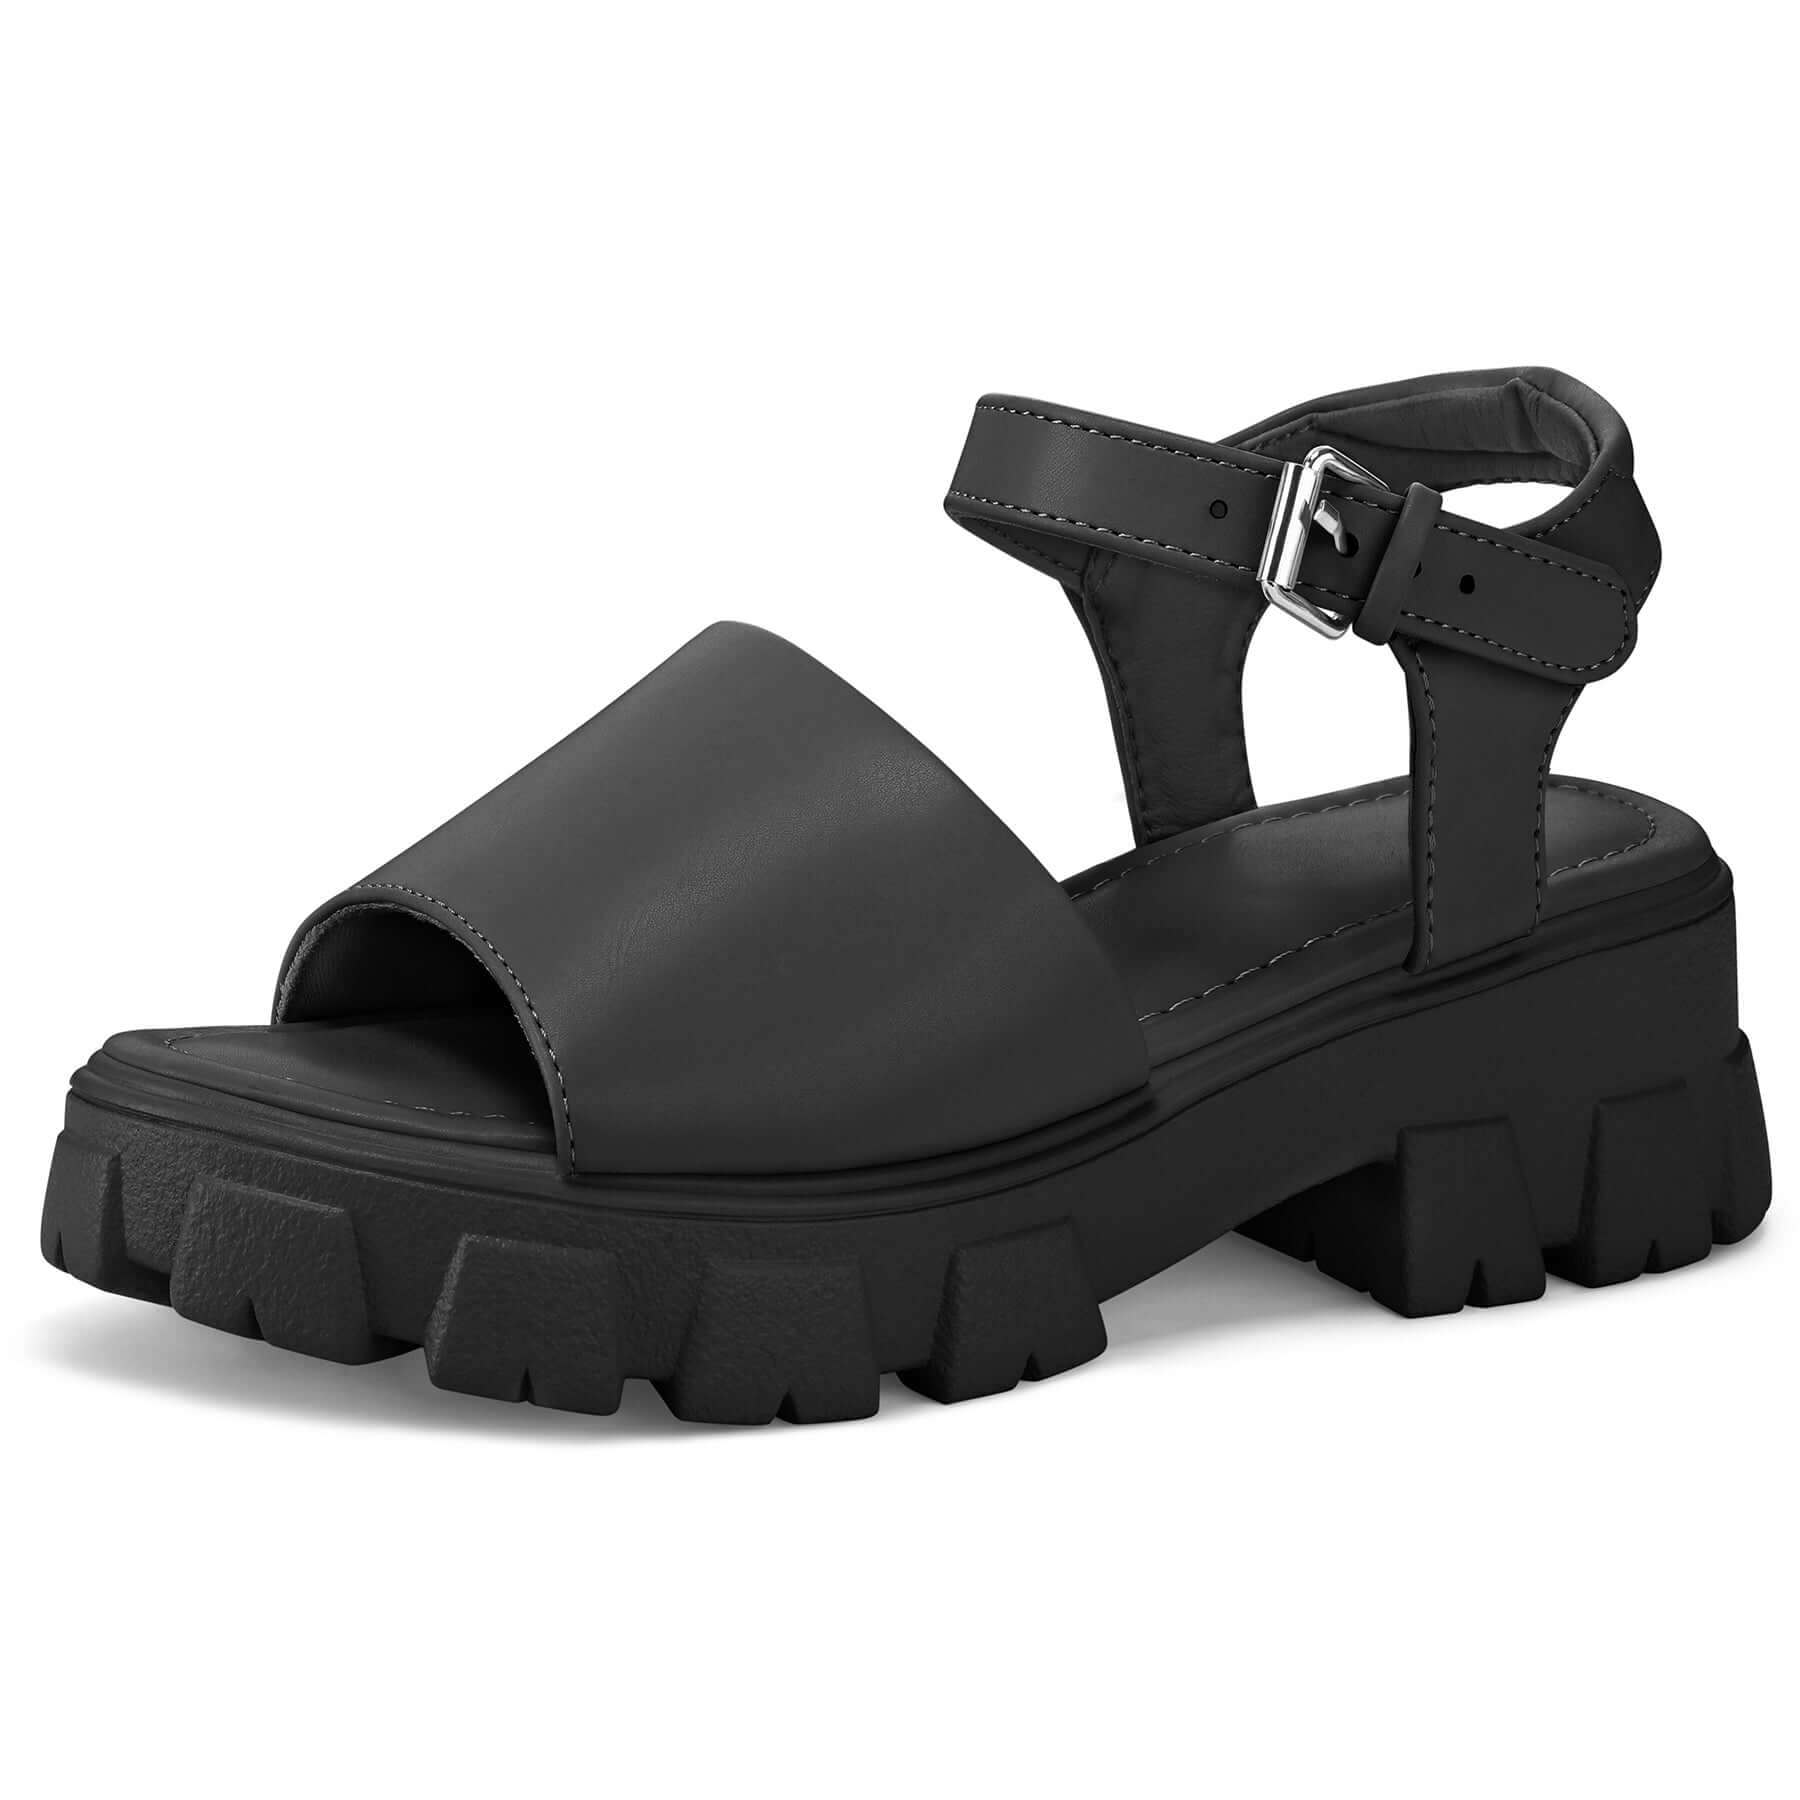 Adjustable Buckle Flange Platform Sandals